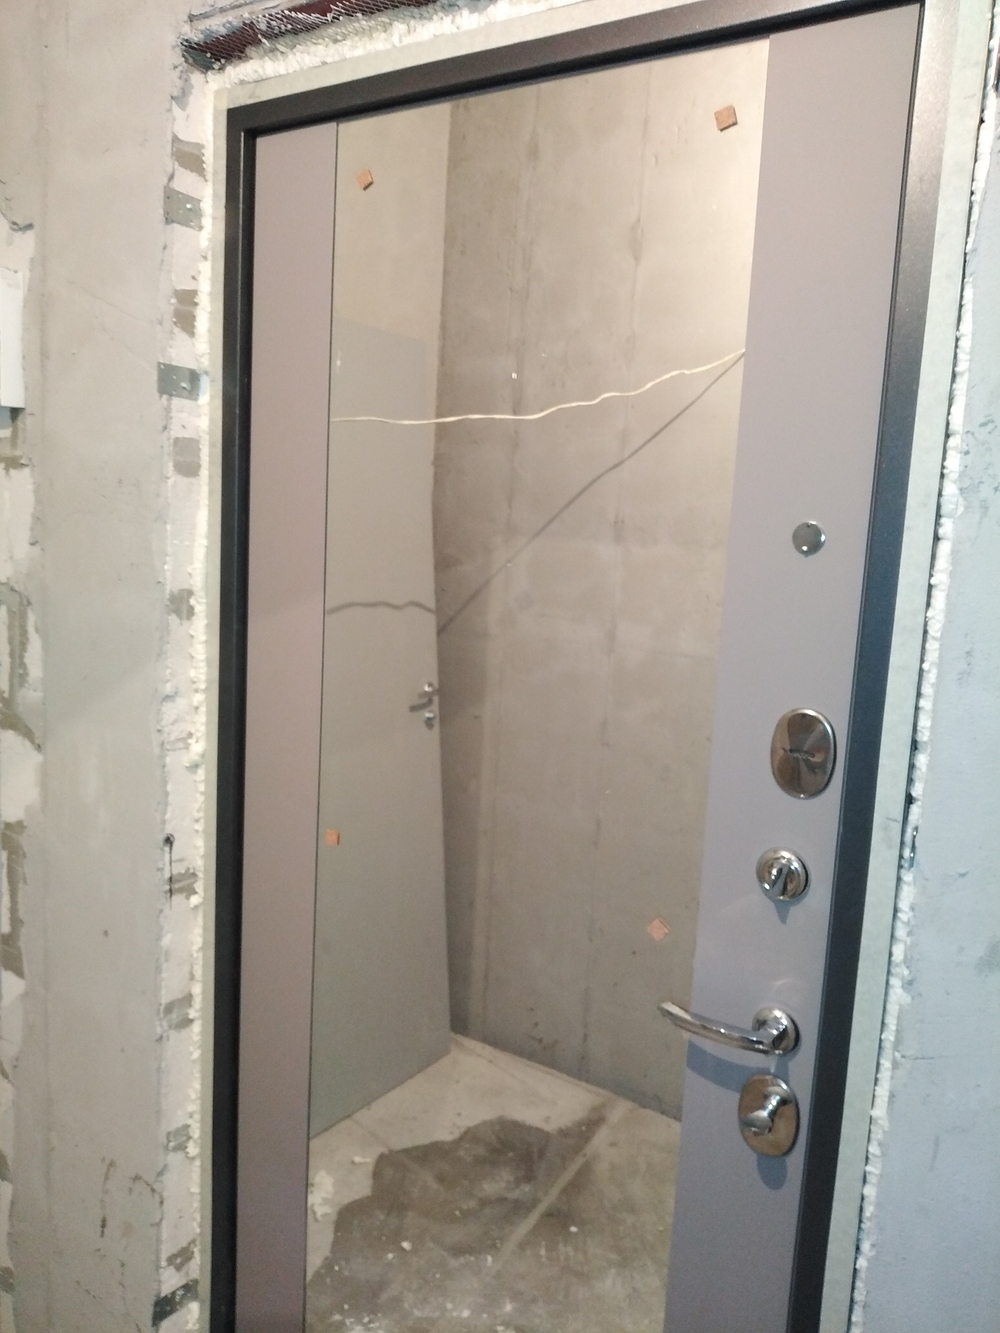 Входная металлическая дверь с зеркалом Бункер HIT Хит BN-04 / ФЛЗ-1 Грей софт